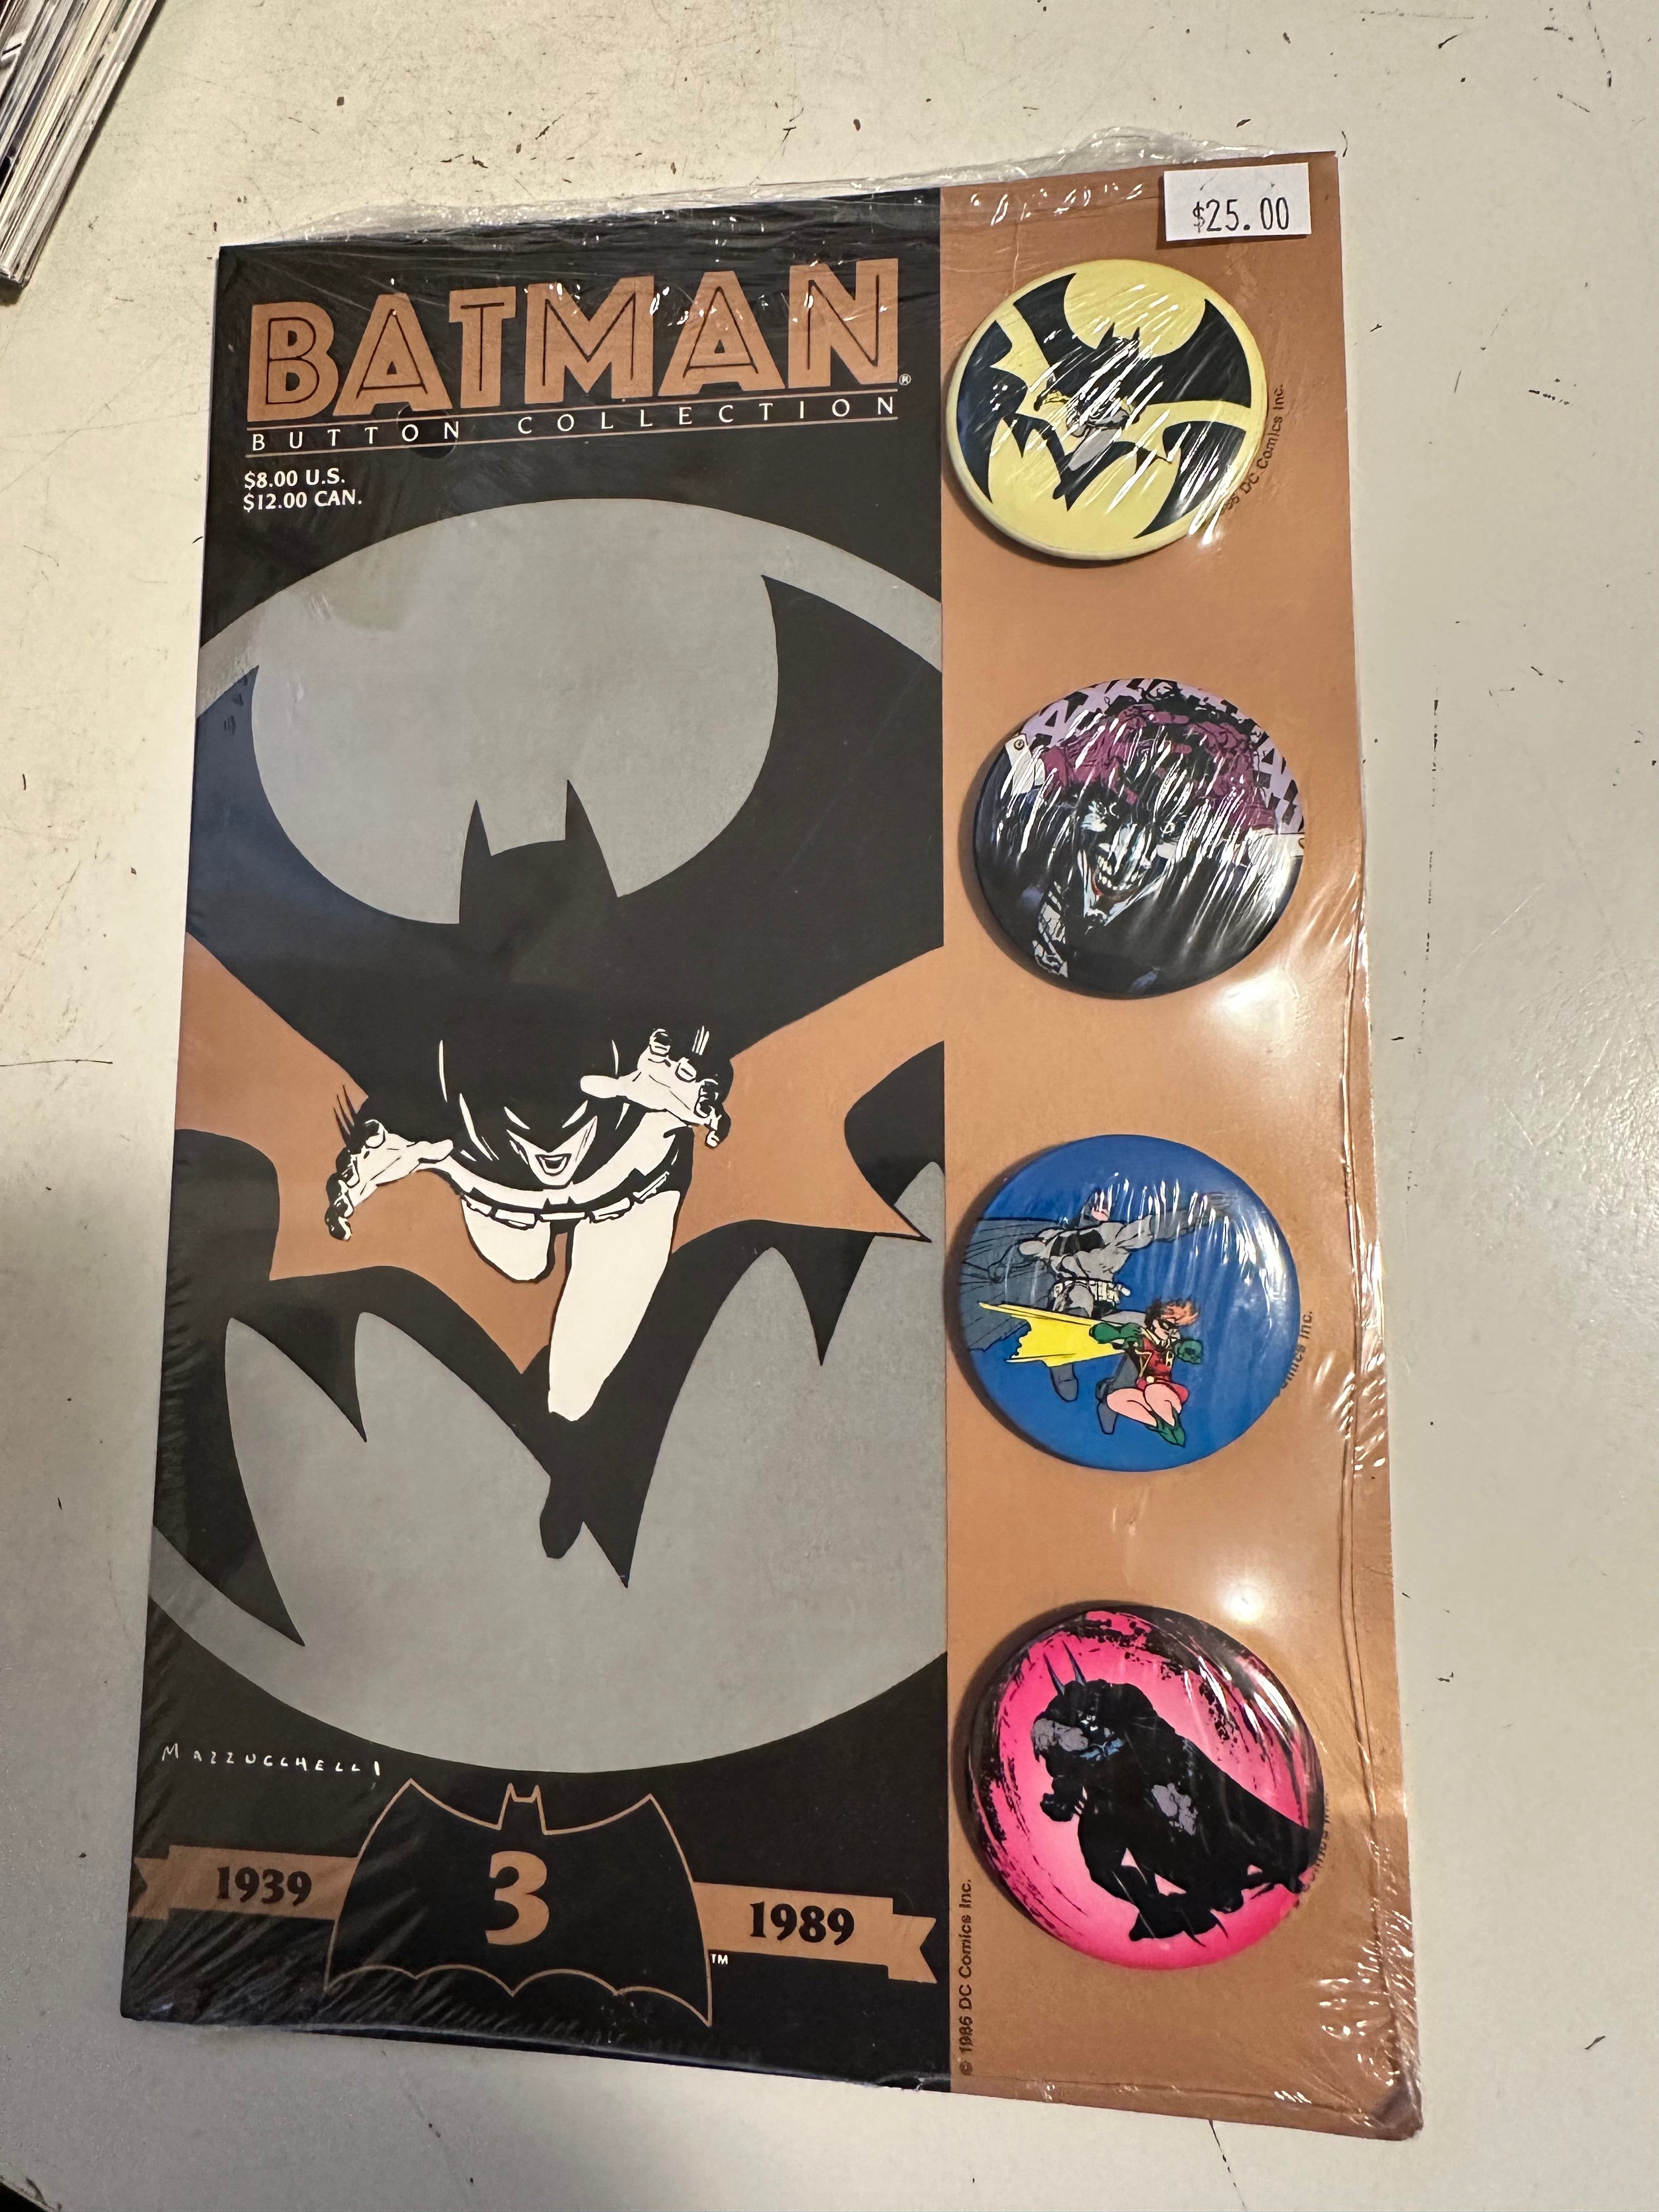 Batman, rare pin back button collection series 3 1989